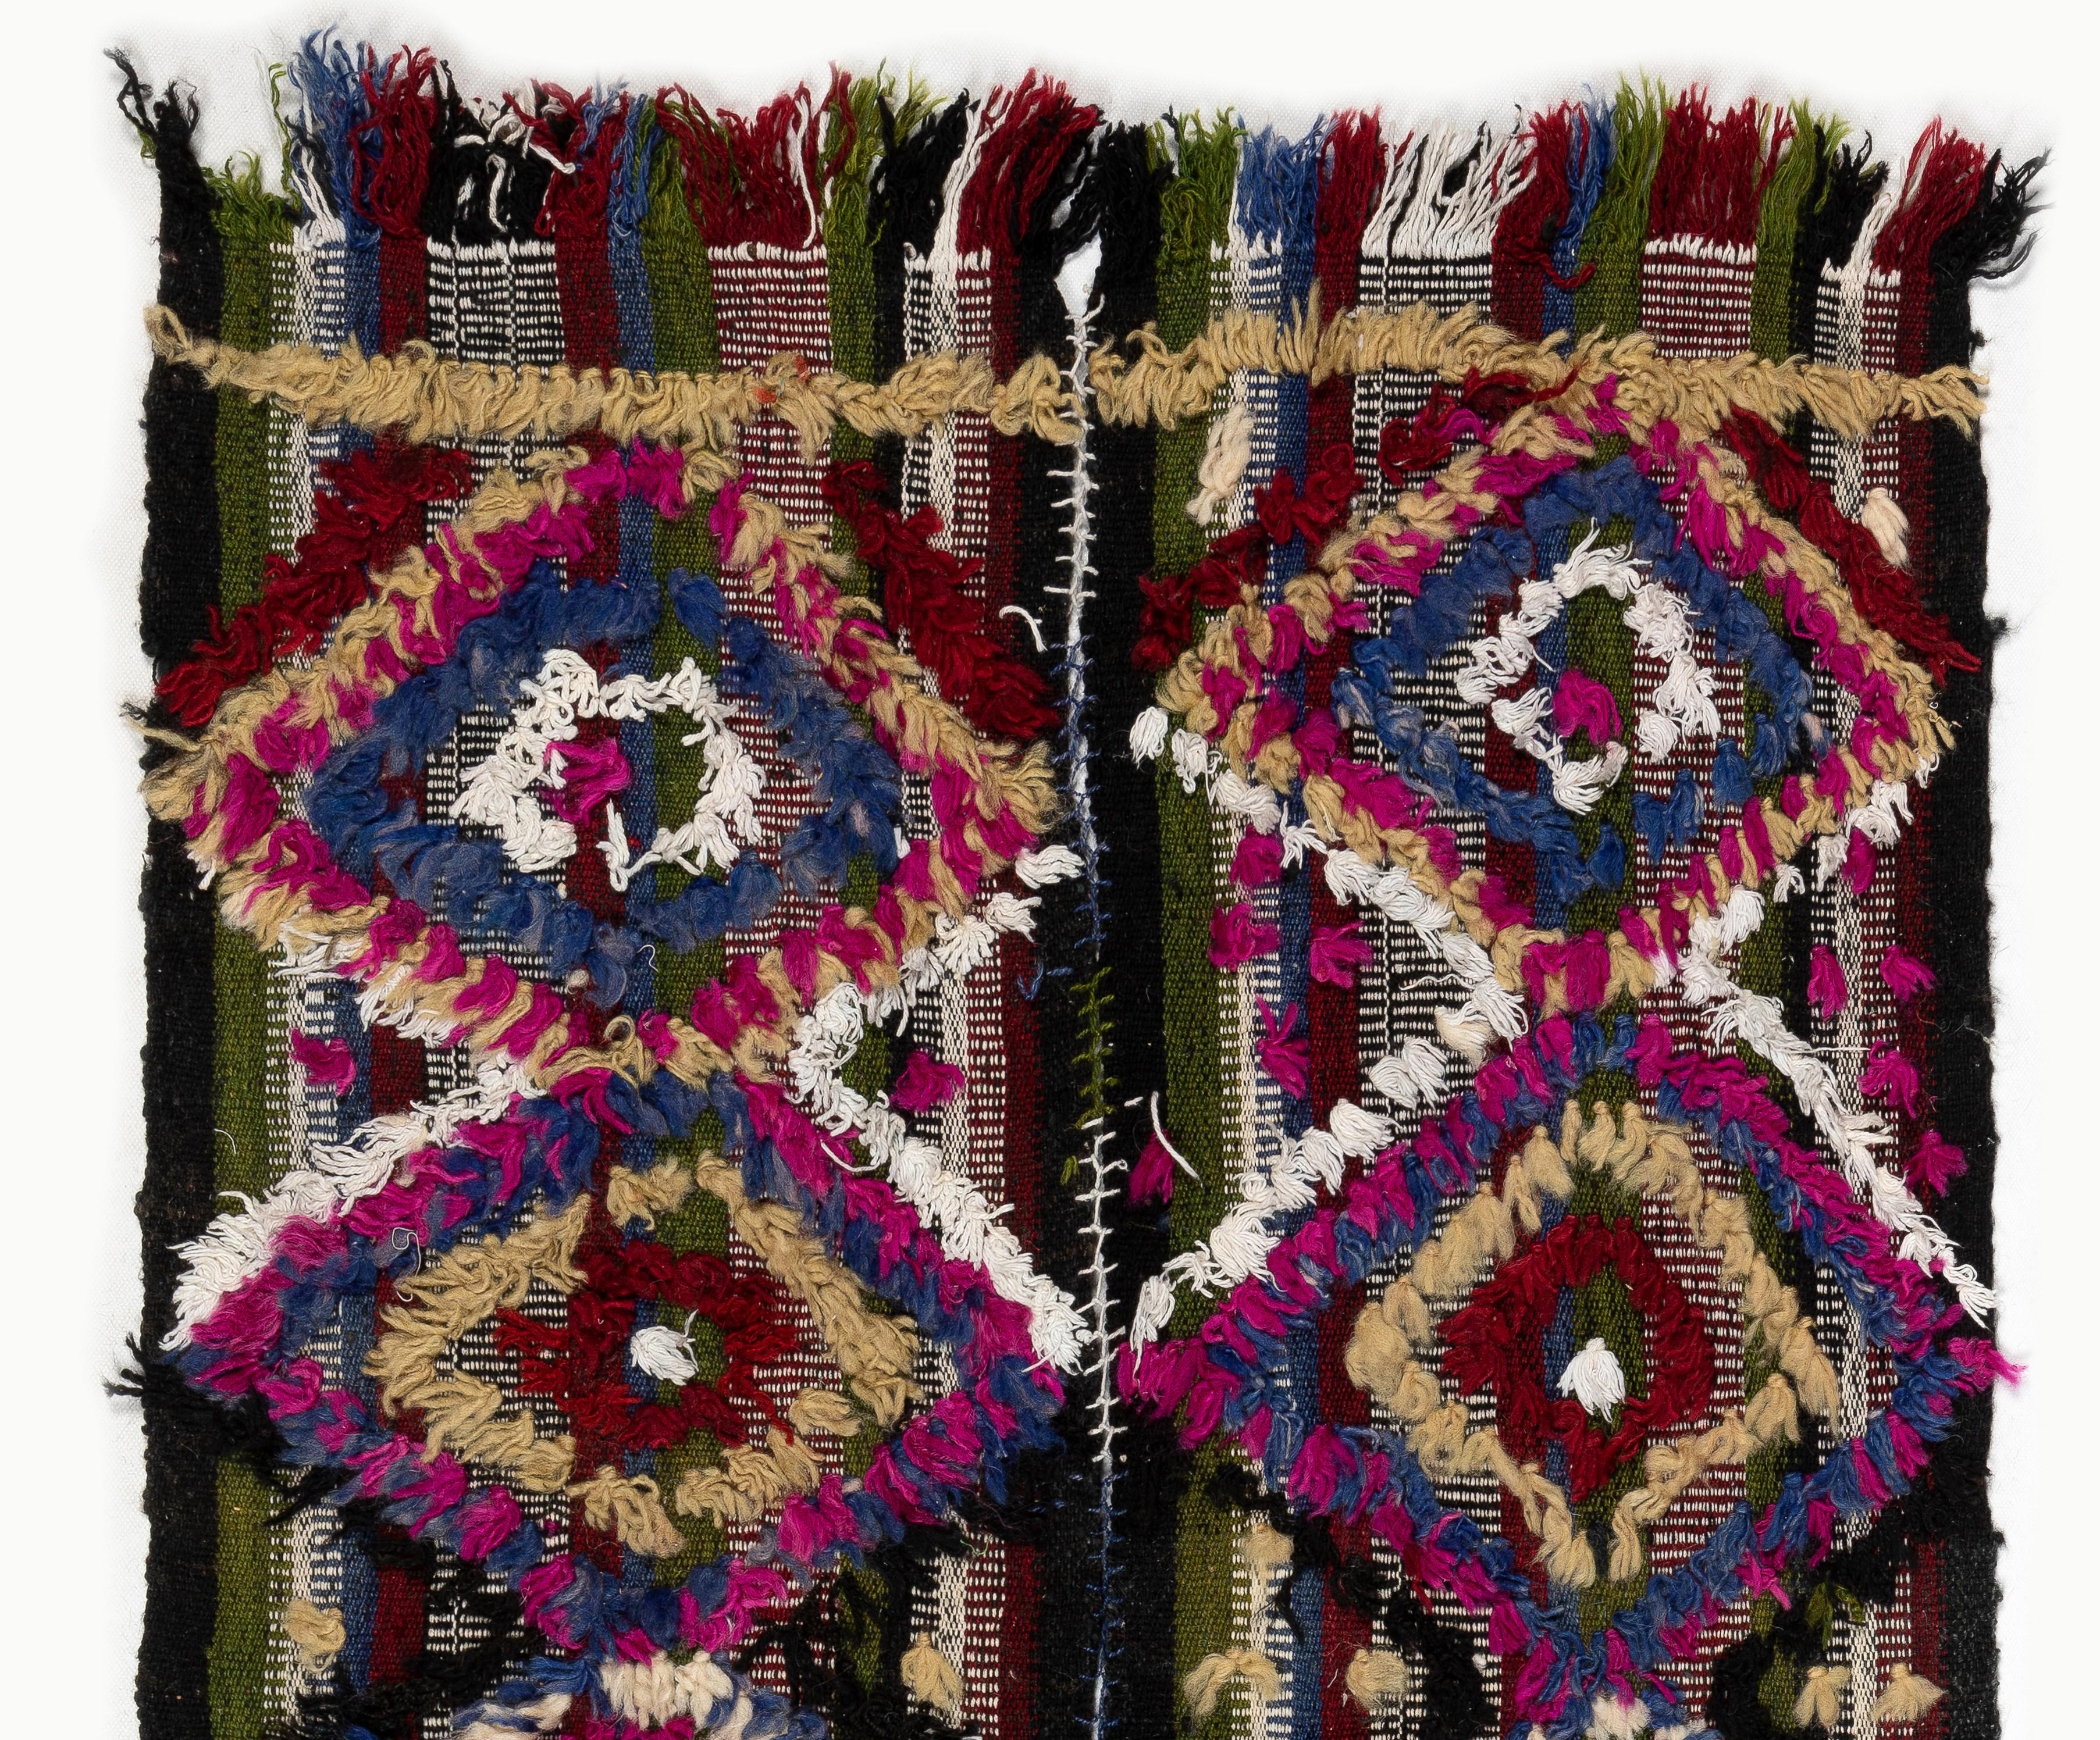 Dieser lebendige handgewebte Teppich wurde von kurdischen Dorfbewohnern in der Zentraltürkei im dritten Viertel des 20. Jahrhunderts für den täglichen Gebrauch hergestellt. Diese prächtigen alten Webarbeiten wurden auf verschiedene Weise verwendet,